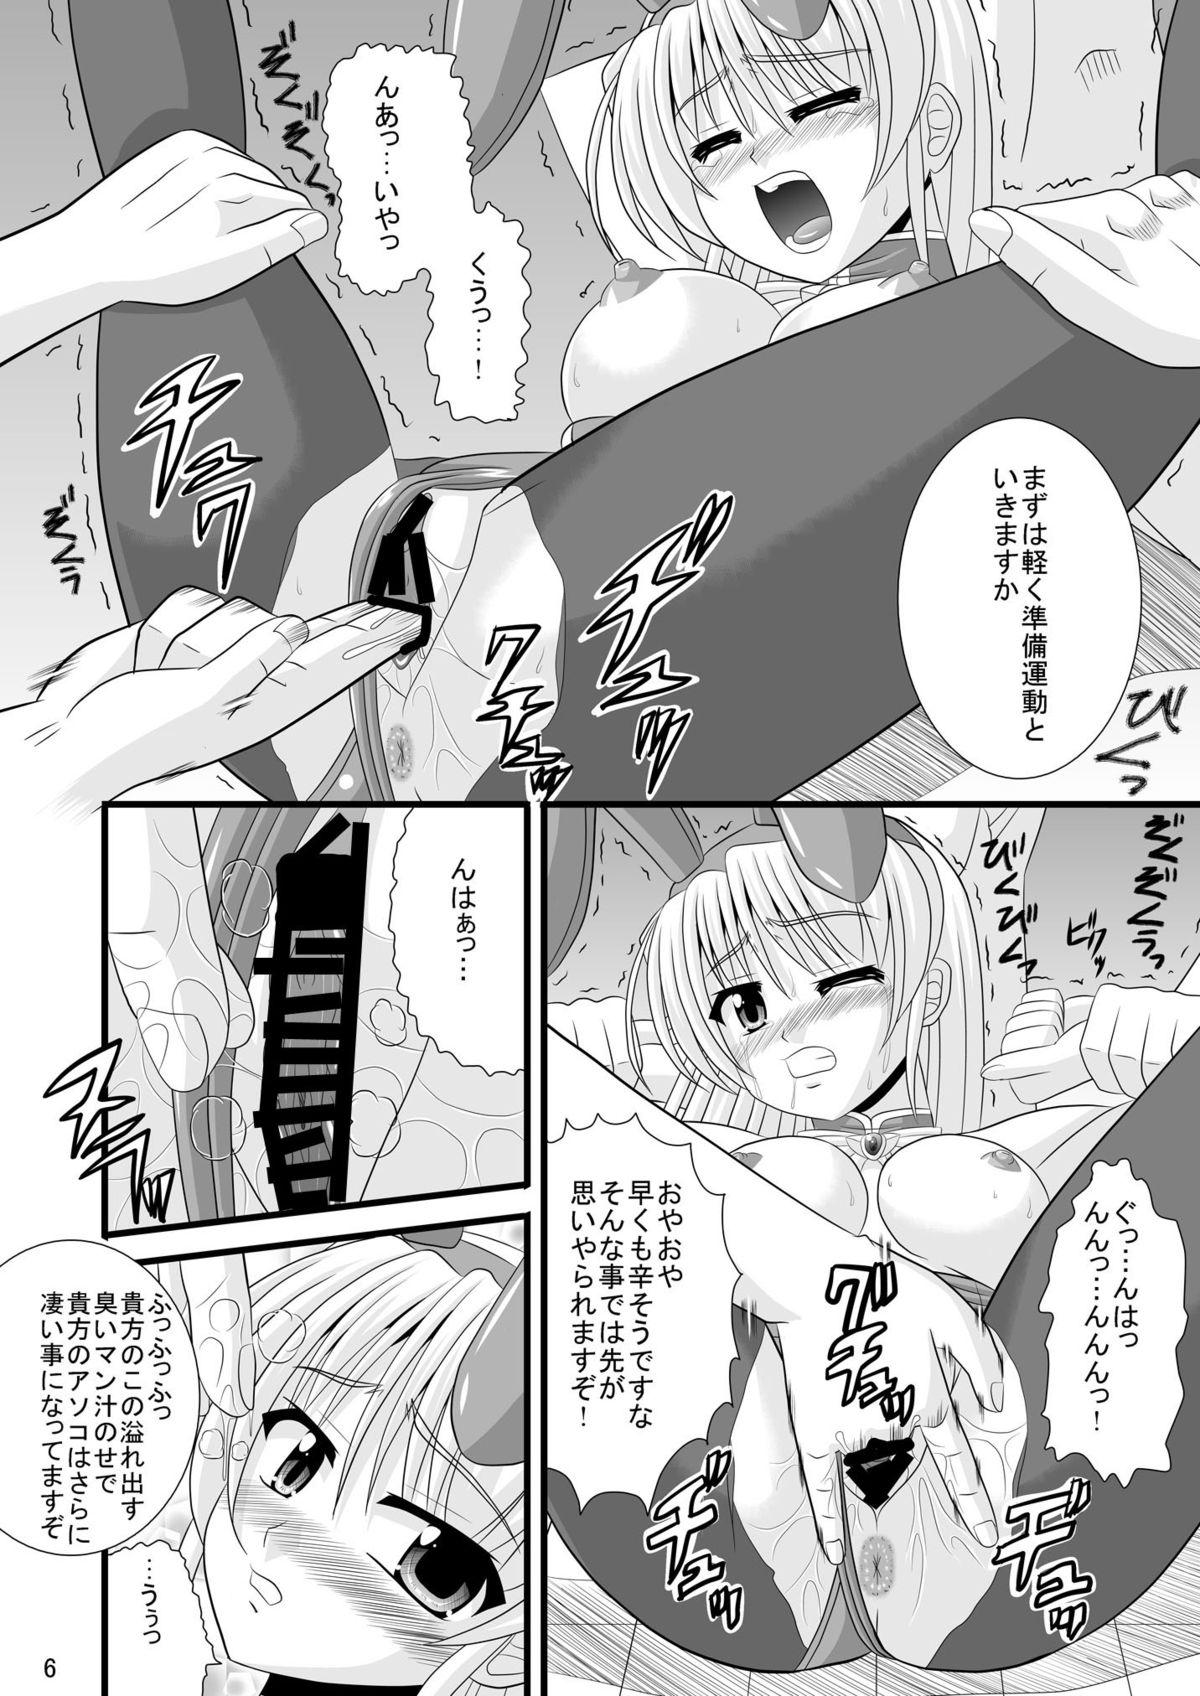 Blowjob Hime-sama no Himitsu Settai - Yoake mae yori ruriiro na Orgia - Page 6